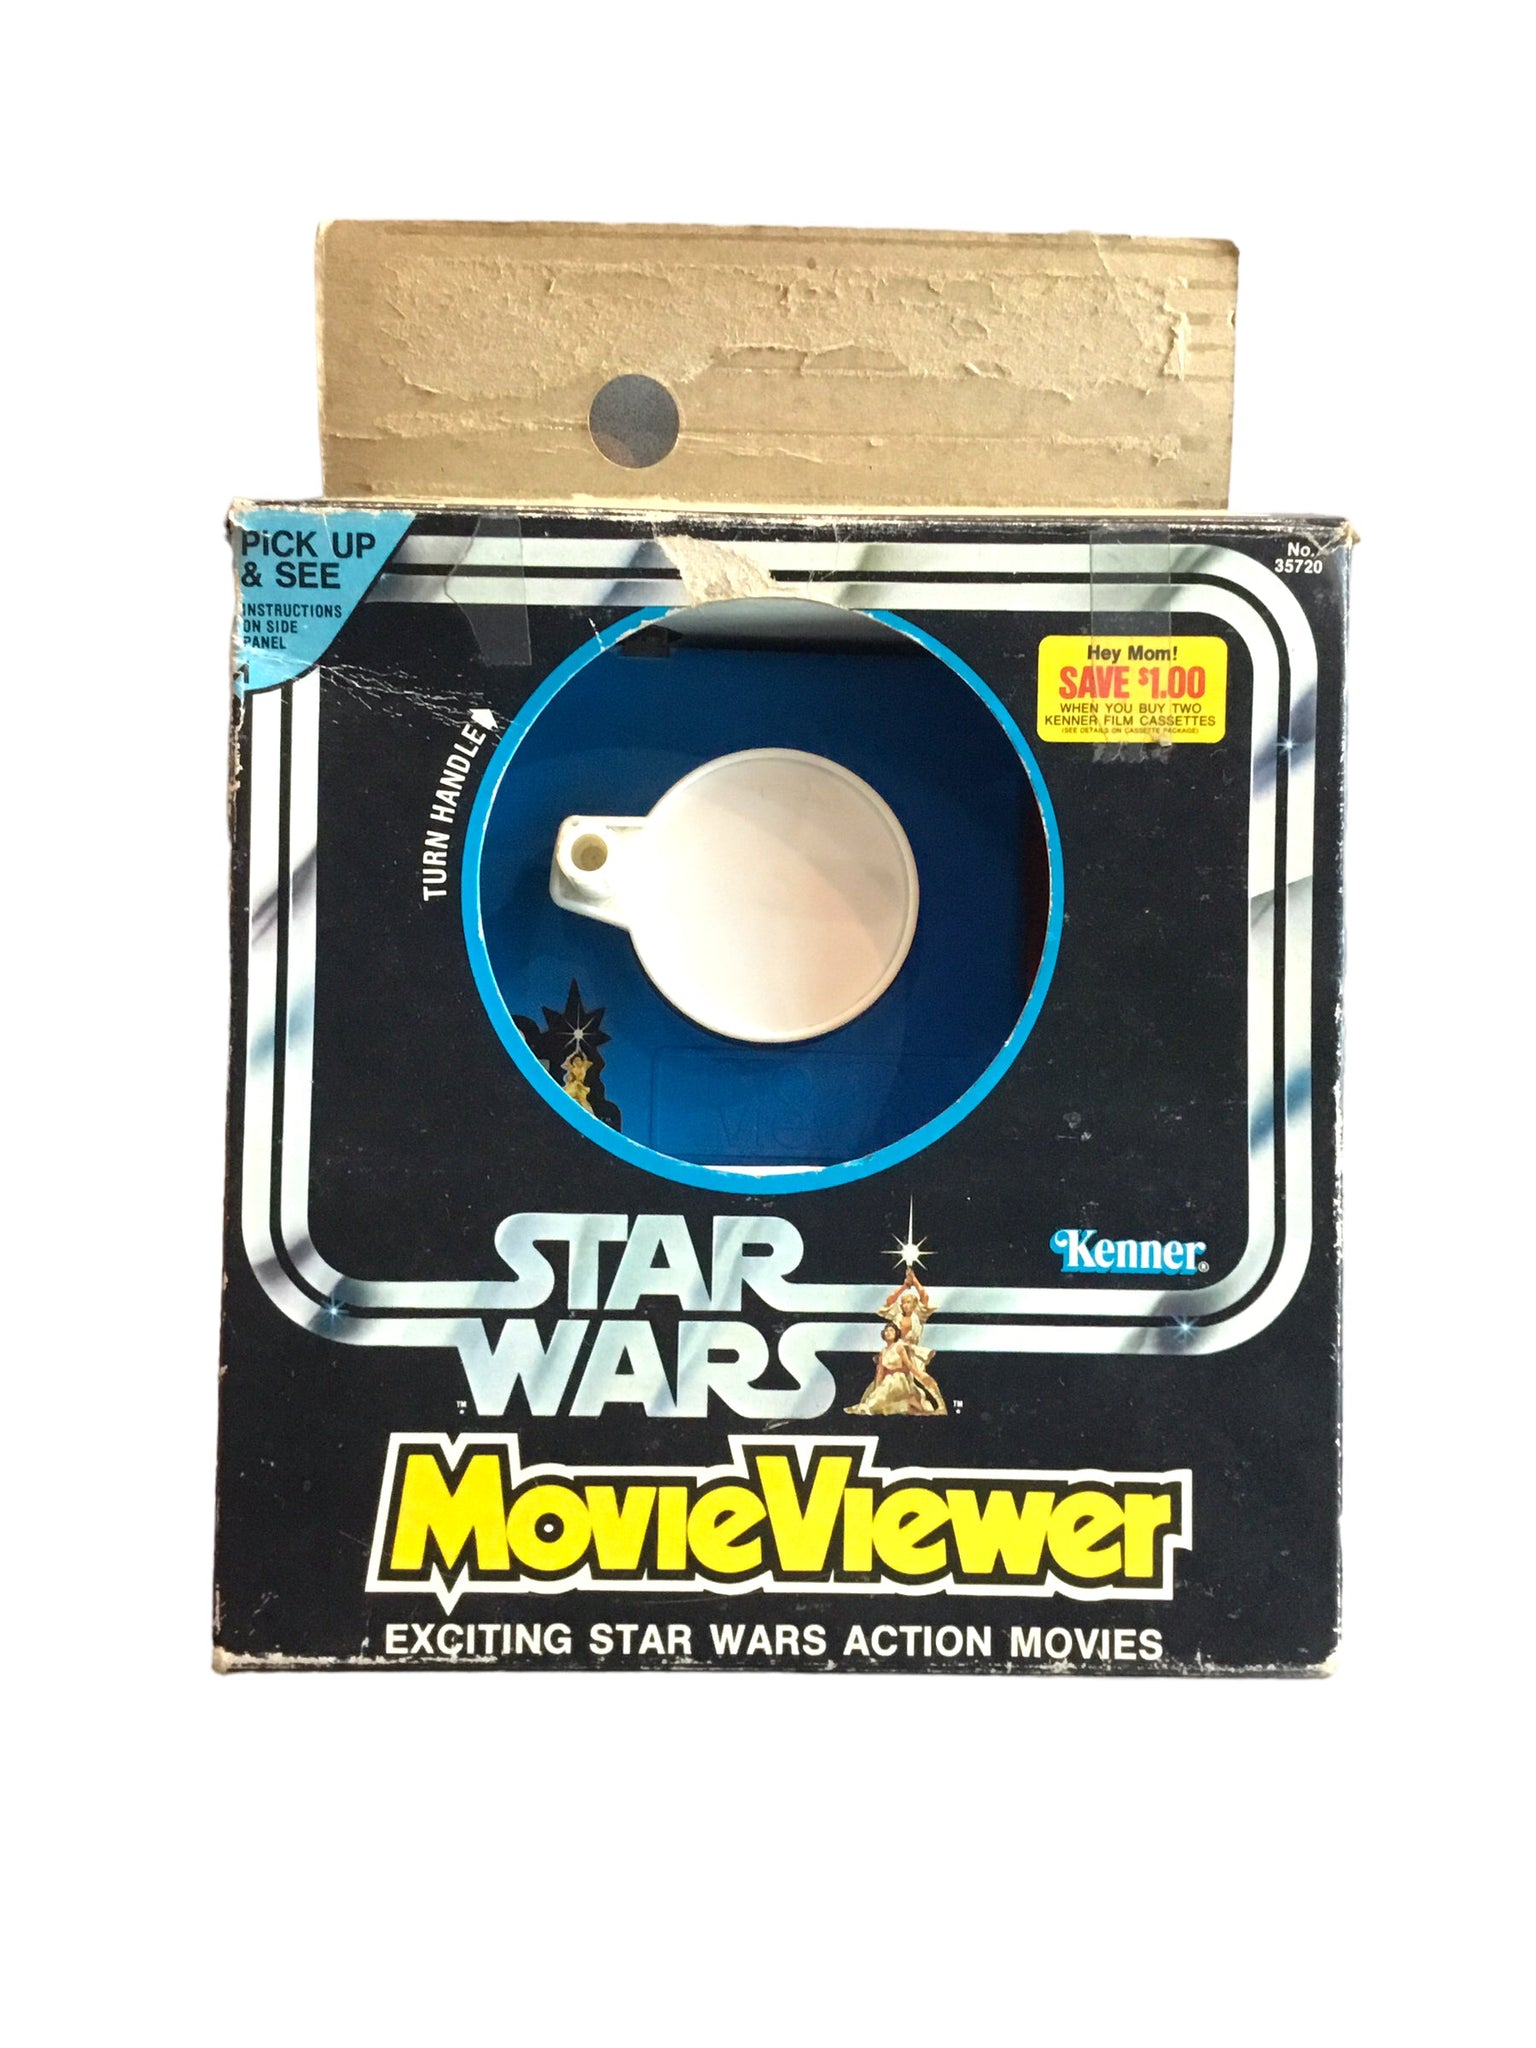 1977 Kenner Star Wars Movie Viewer & Movie Cassette In Box